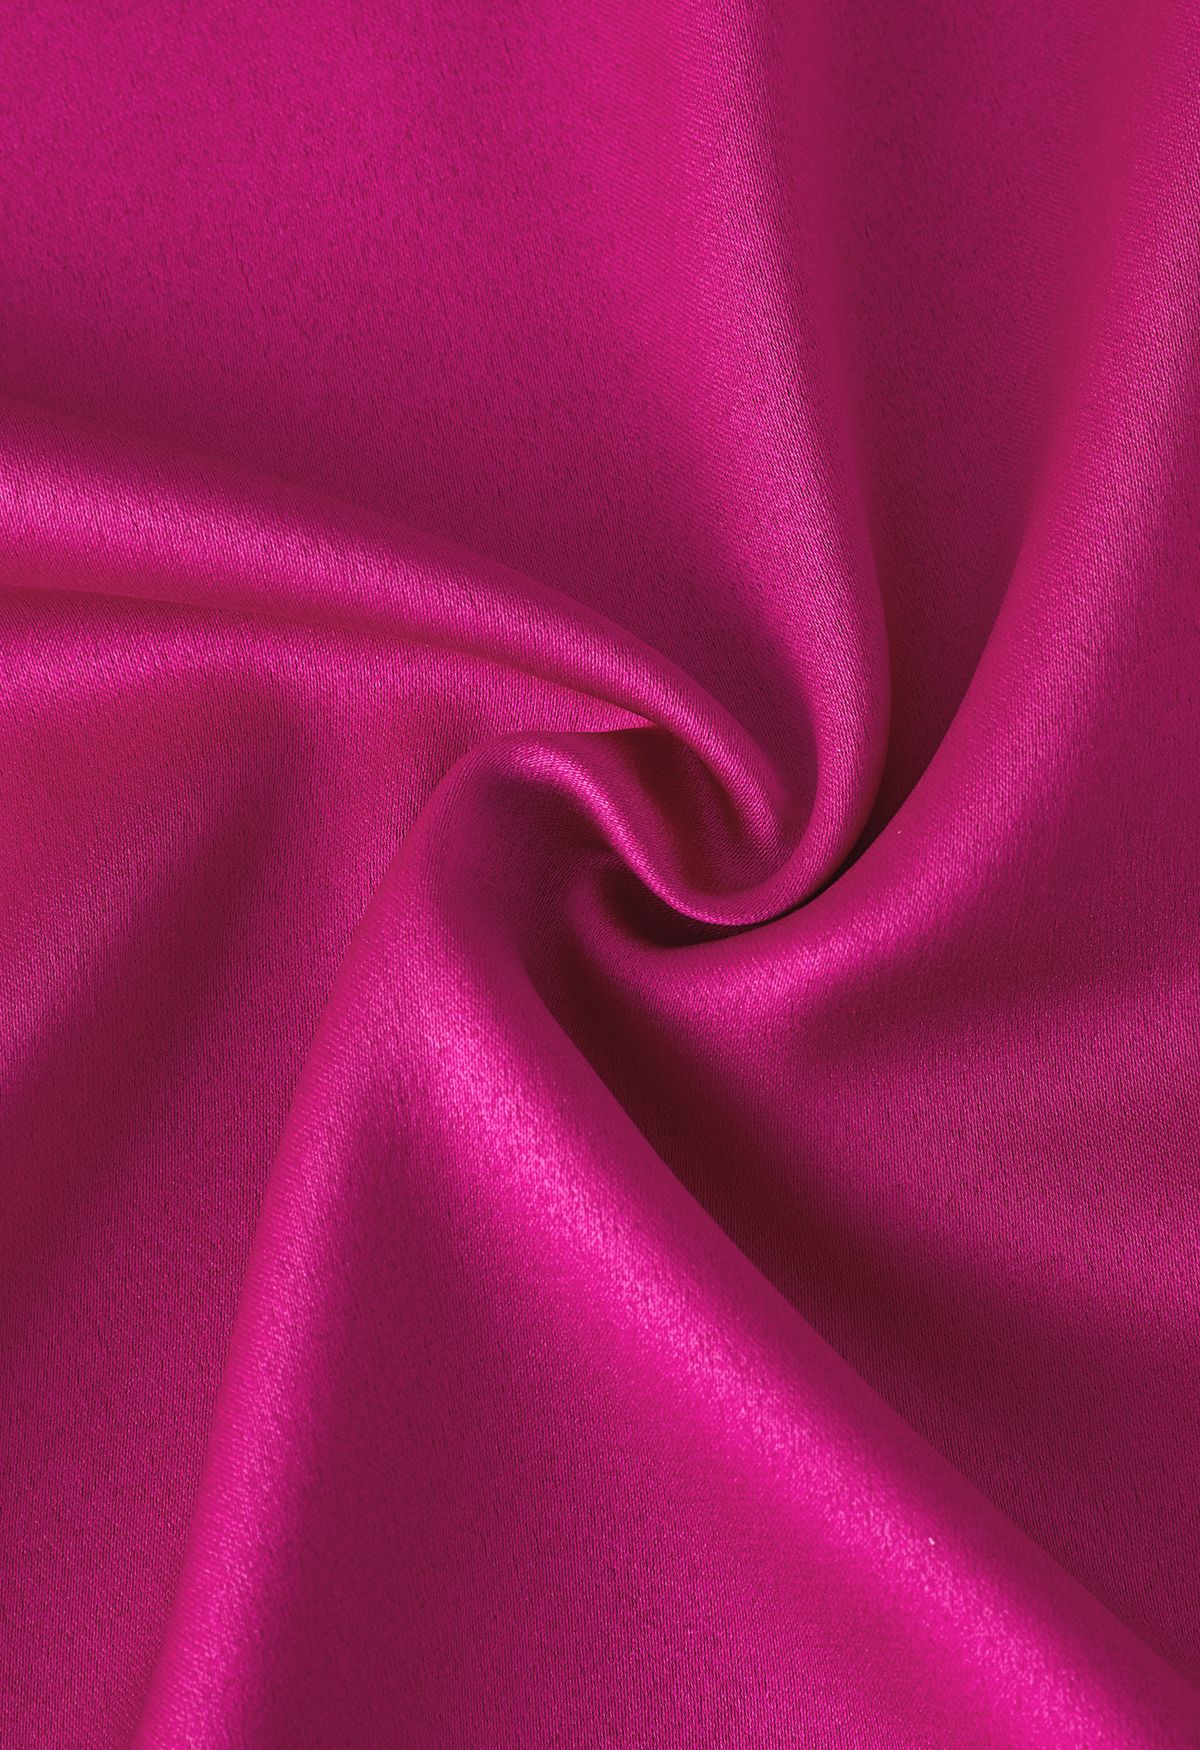 Camisa de satén con ribete de plumas en los puños en rosa intenso